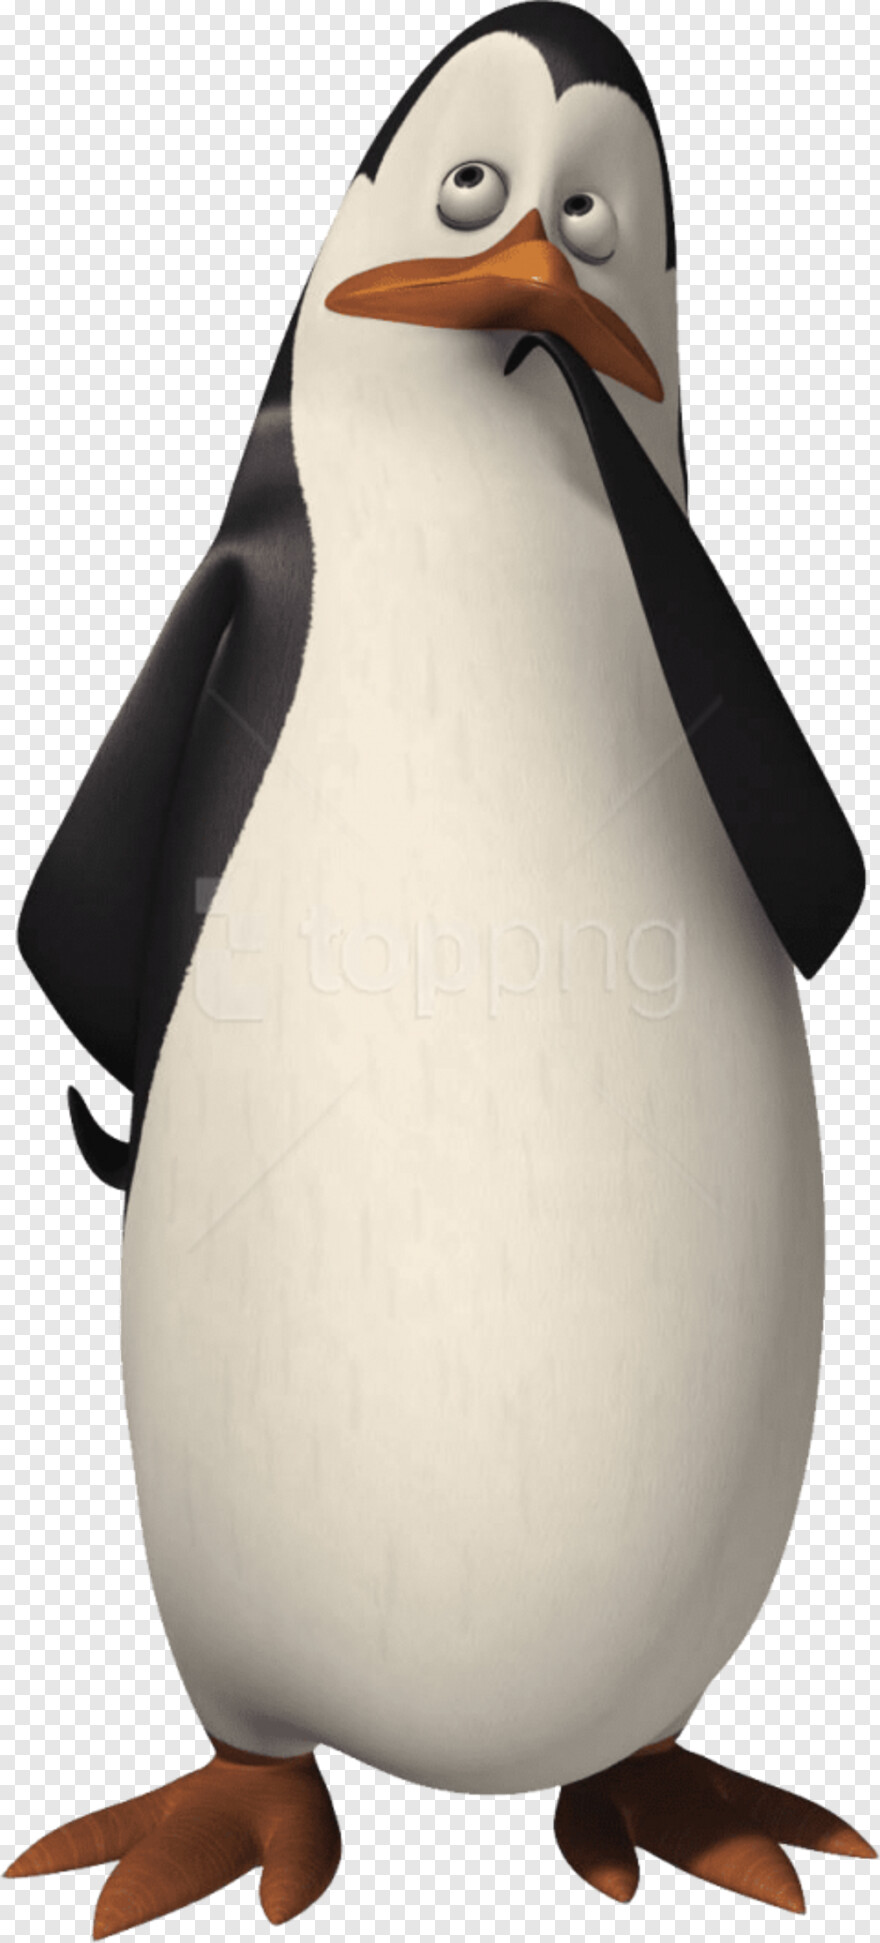 club-penguin # 706356